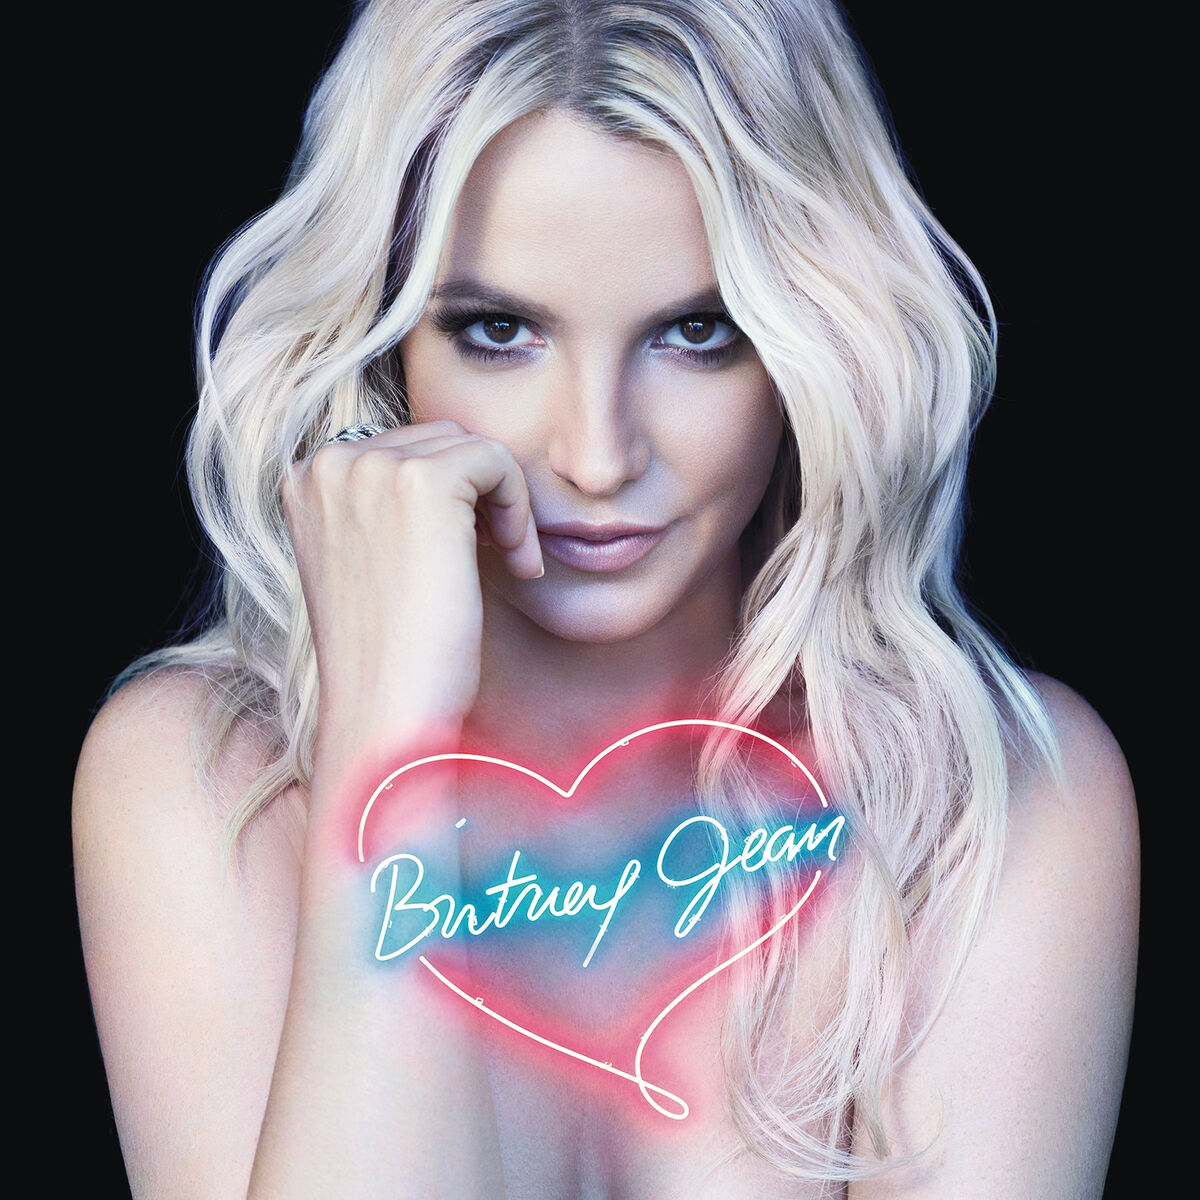 Britney Jean | Britney Spears Wiki | Fandom